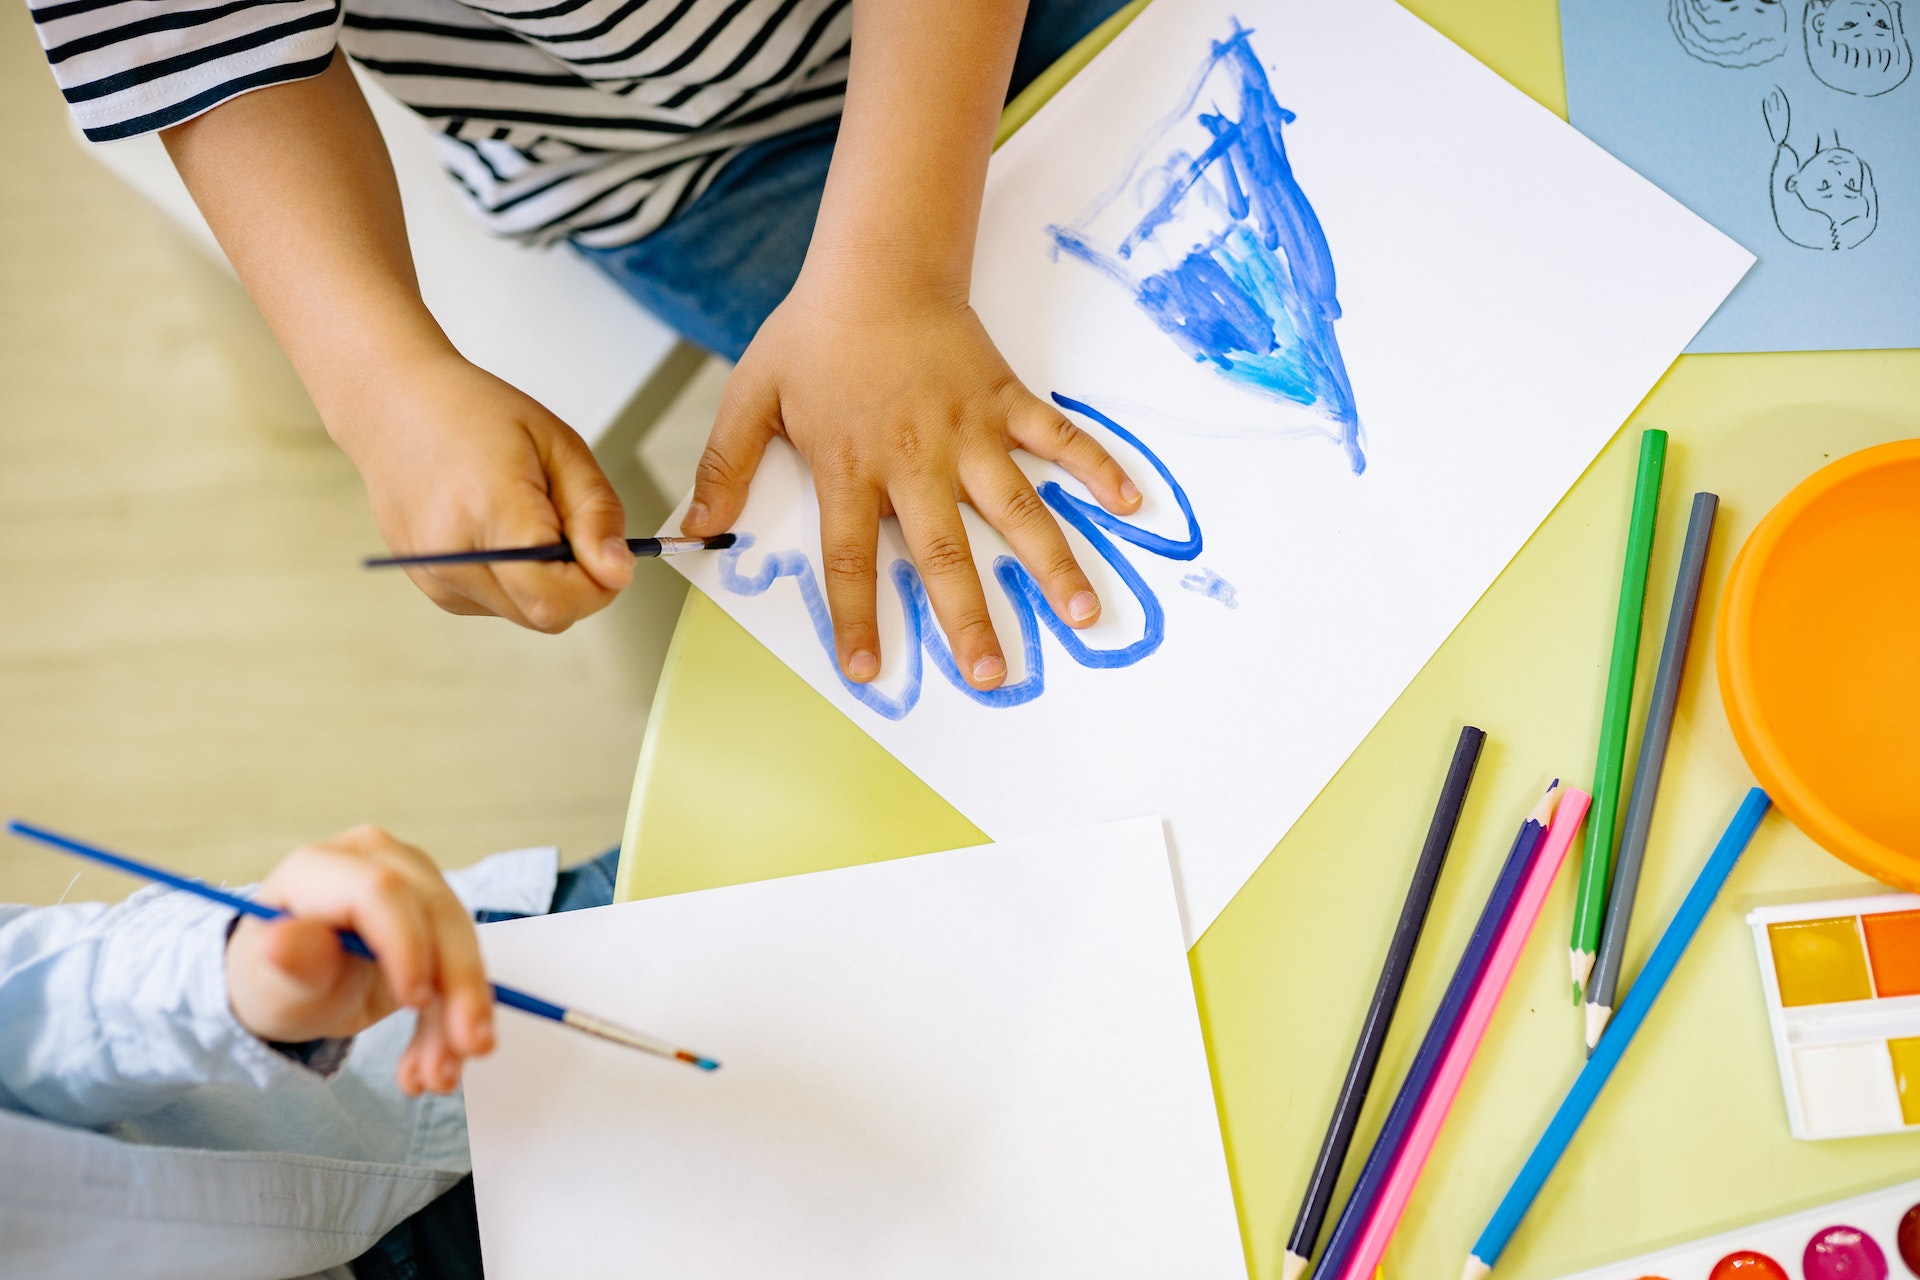 Atividades artísticas trazem inúmeros benefícios para as crianças, estimulando a criatividade e habilidades sociais e cognitivas